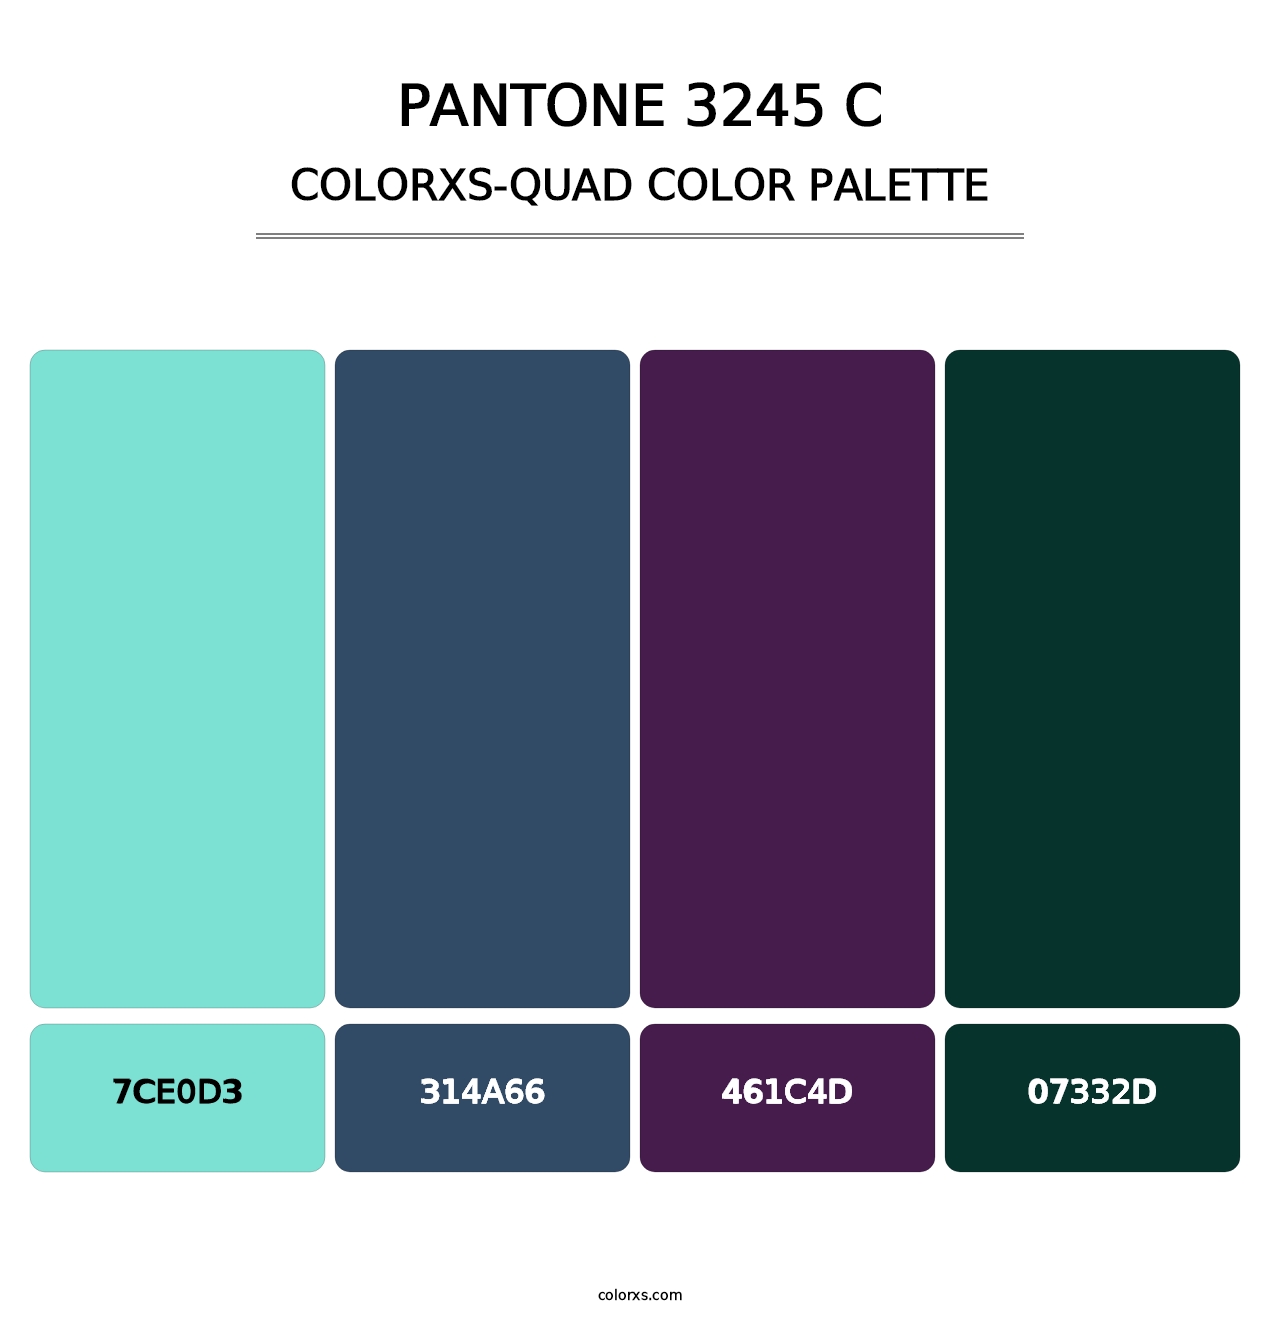 PANTONE 3245 C - Colorxs Quad Palette